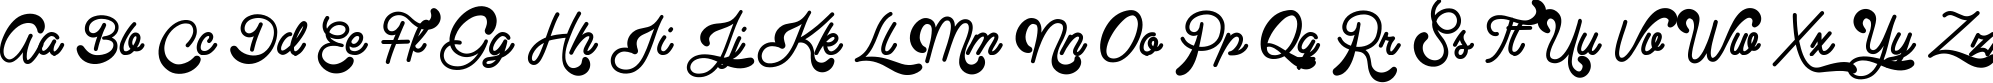 Пример написания английского алфавита шрифтом Clear Line - PERSONAL USE ONLY